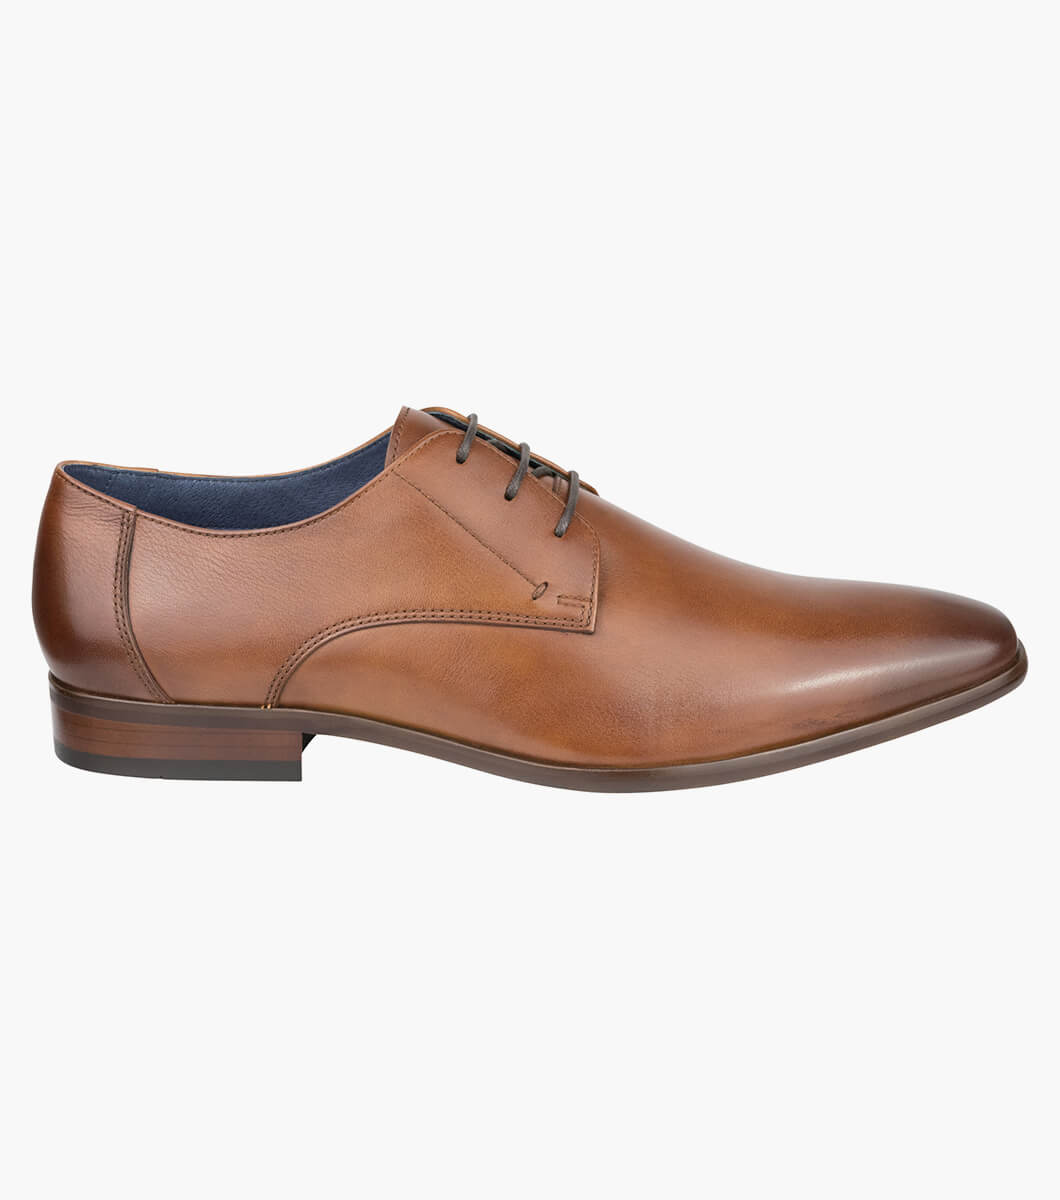 Men’s Dress Shoes | RICH TAN Plain Toe Derby | Florsheim Flex Smart